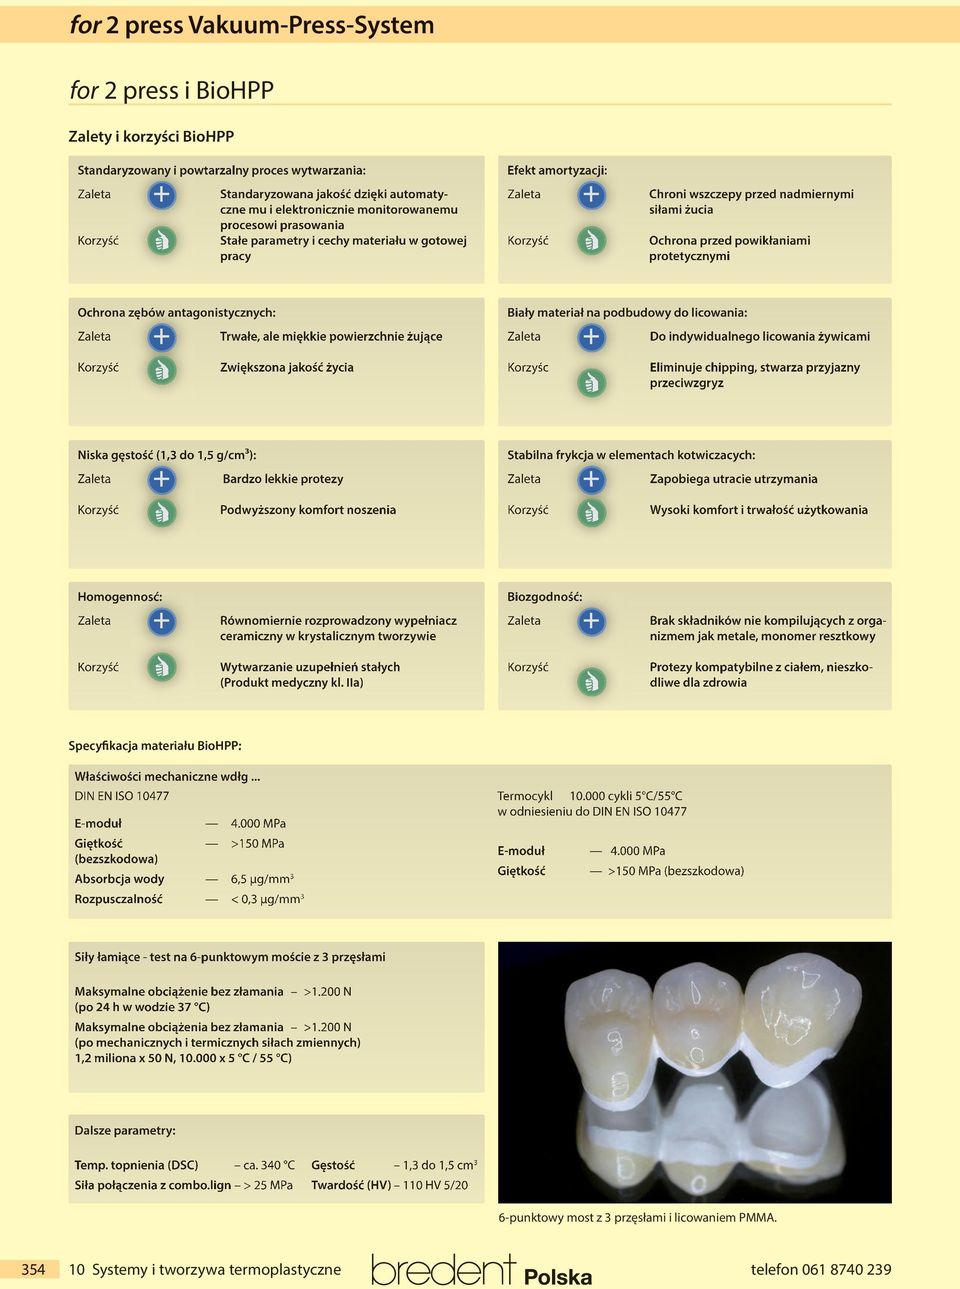 powikłaniami protetycznymi Ochrona zębów antagonistycznych: Zaleta + Korzyść + Trwałe, ale miękkie powierzchnie żujące Zaleta + Zwiększona jakość życia Biały materiał na podbudowy do licowania: